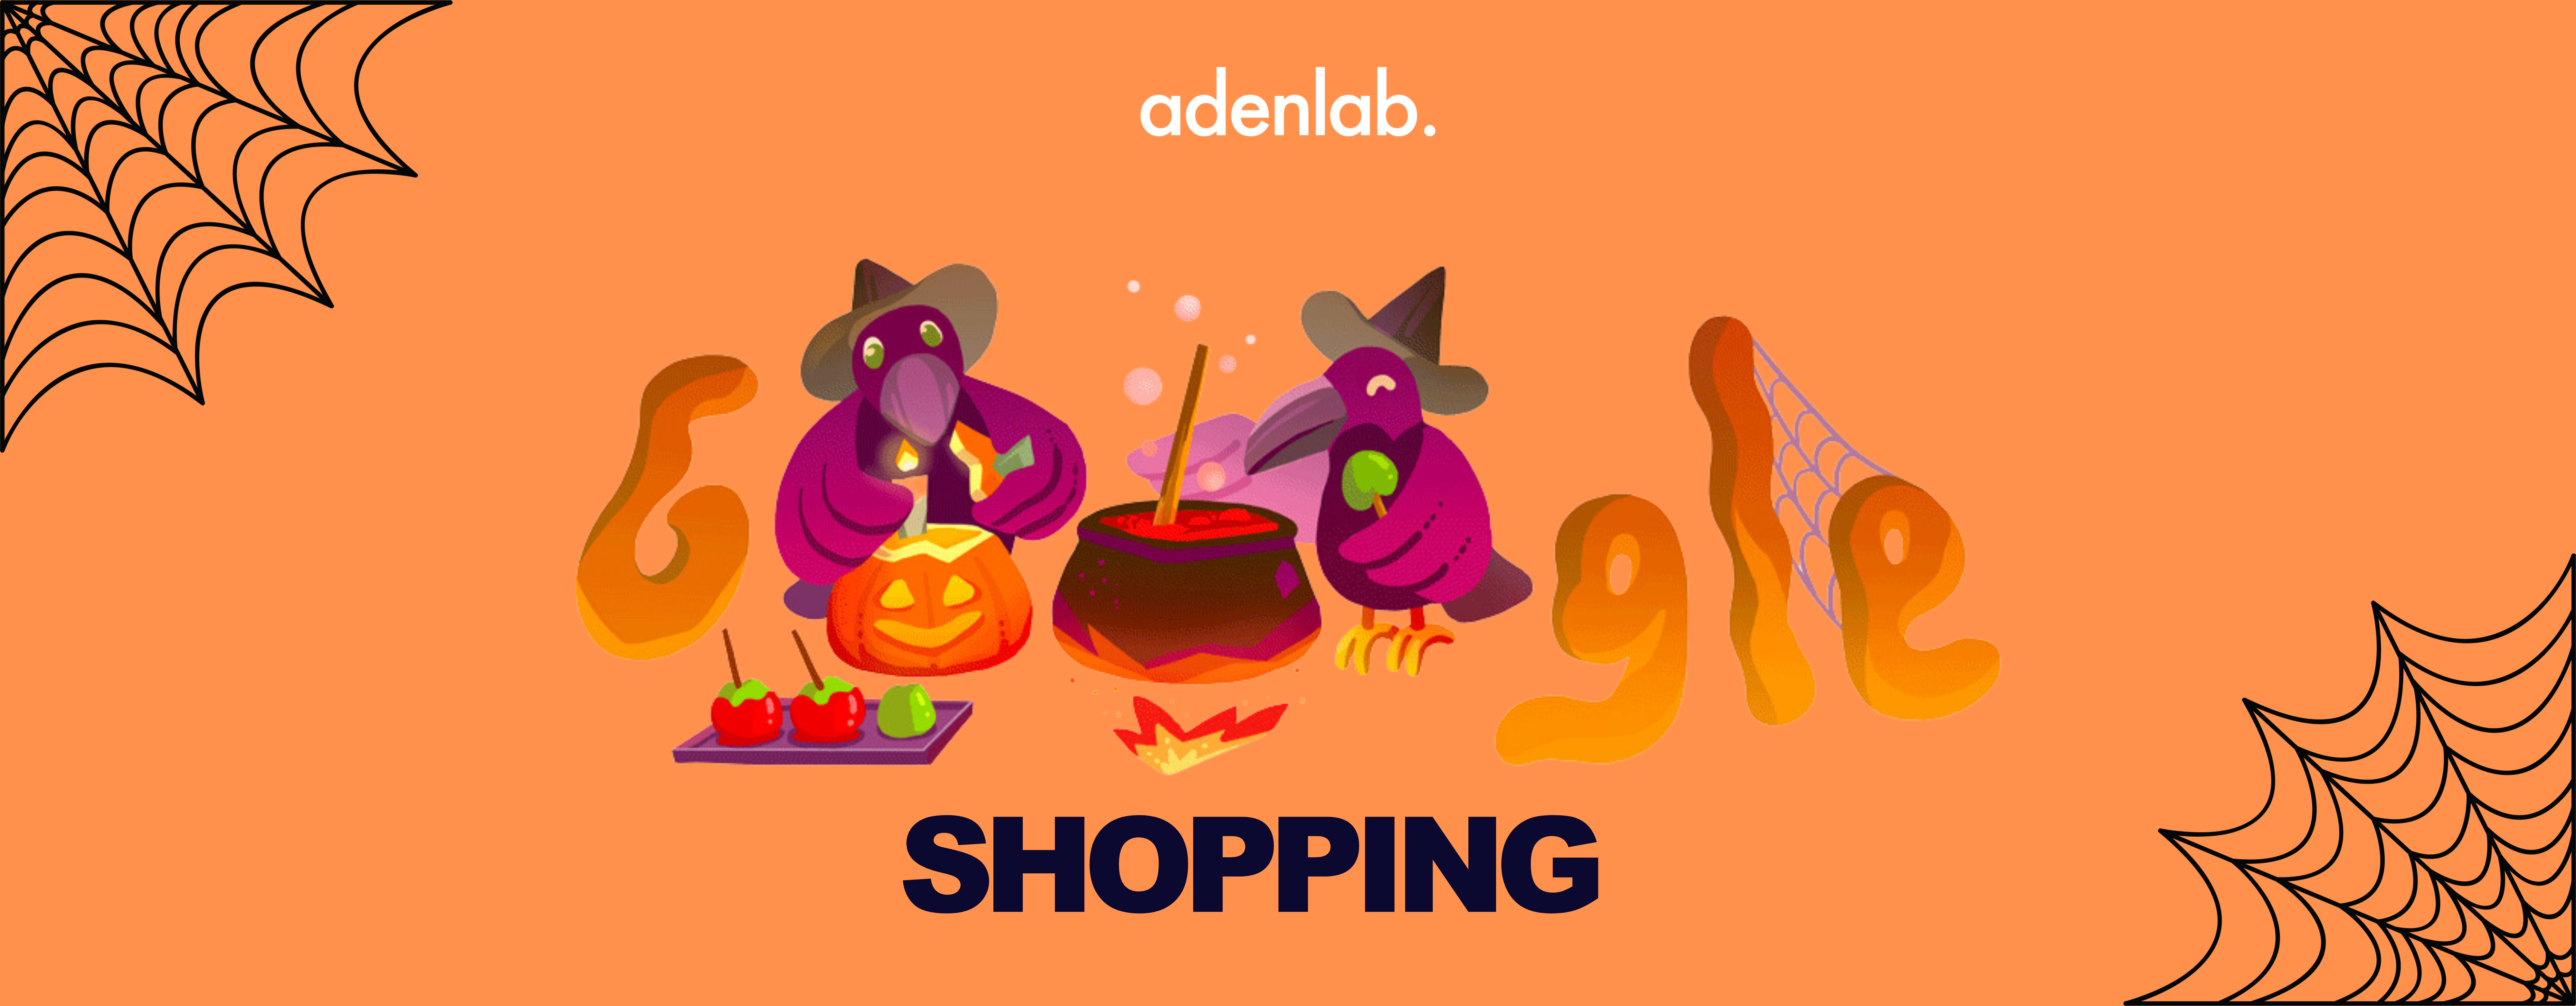 5 Enchantements pour terrifier votre catalogue Google Shopping à Halloween 🚀🪄